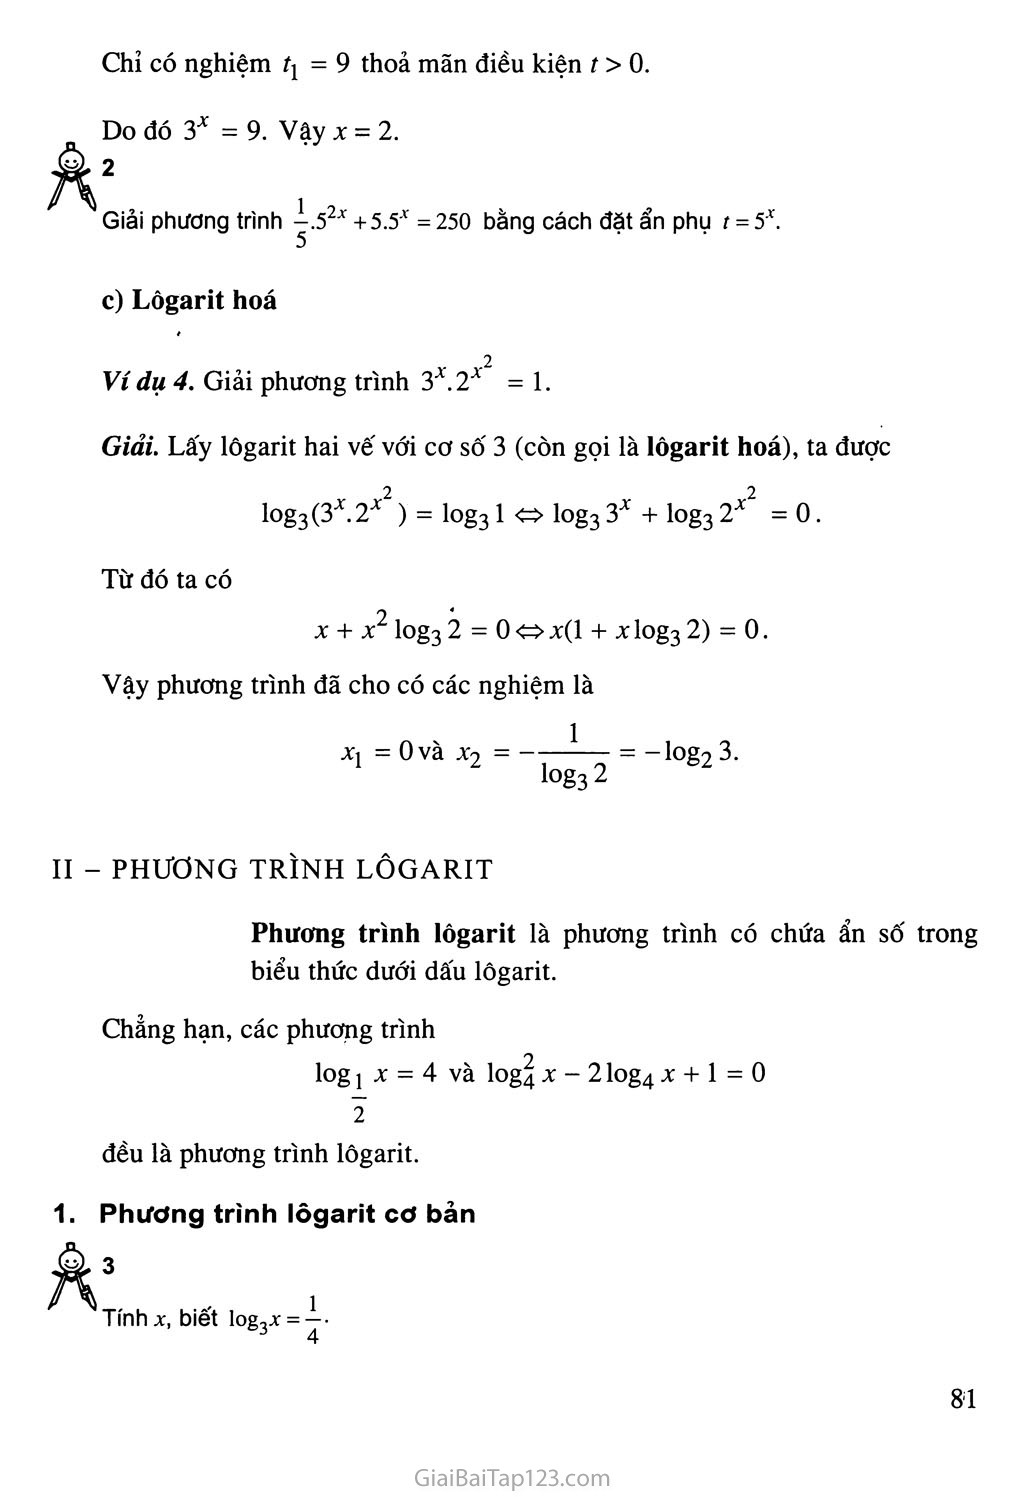 Bài 5. Phương trình mũ và phương trình lôgarit trang 4